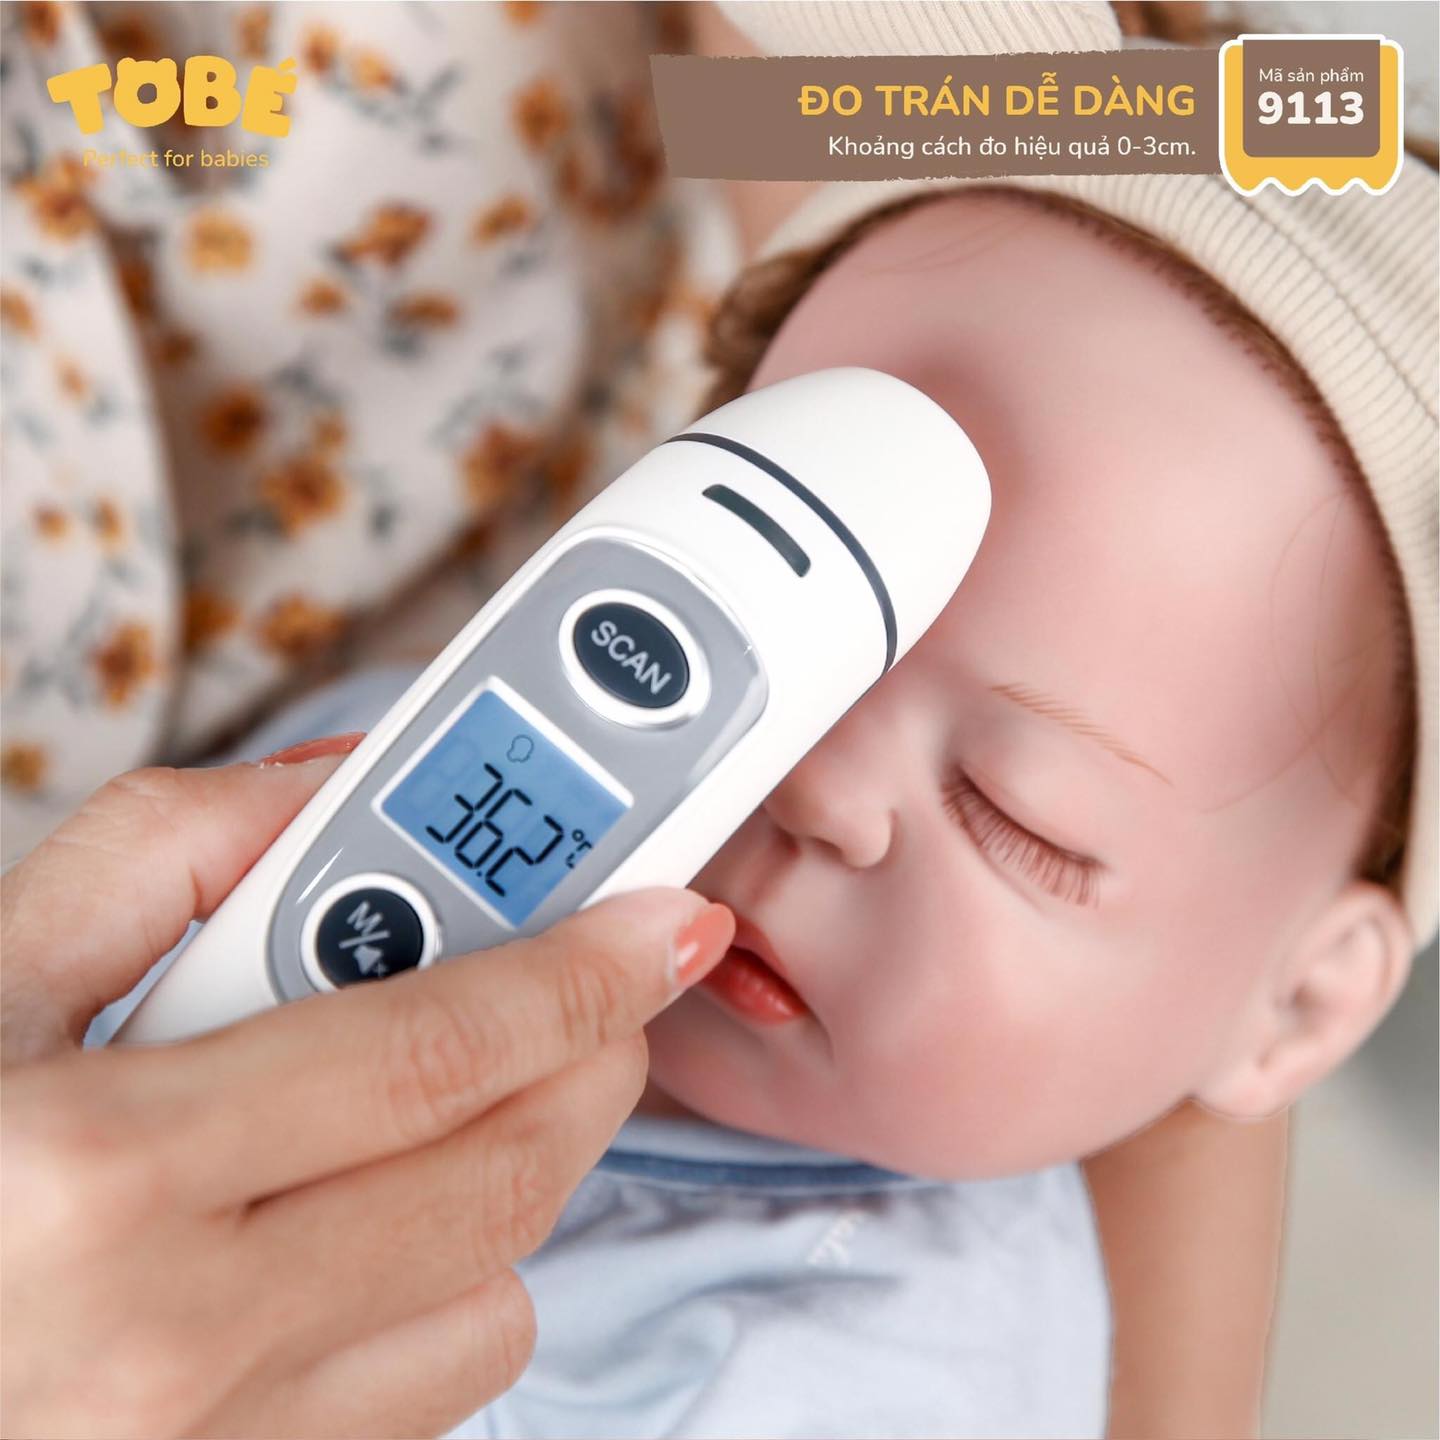 Nhiệt kế hồng ngoại Prime Tobe cao cấp tiện dụng cho mẹ và bé đo chính xác